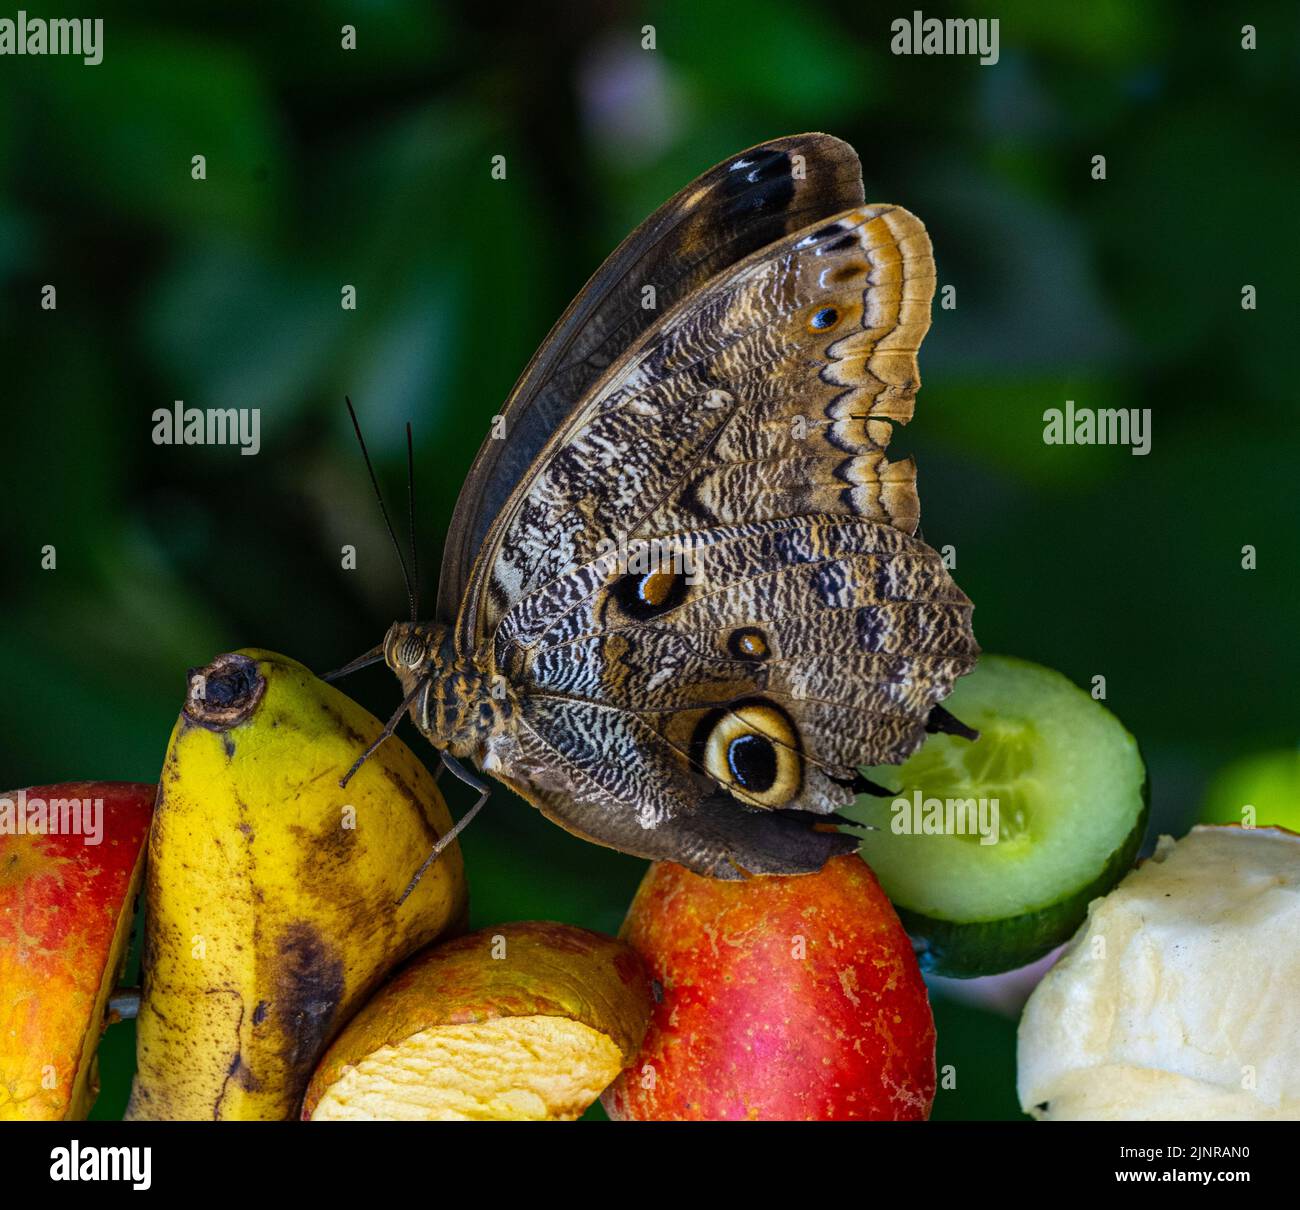 Morpho peleides, auch bekannt als Peleides blue morfo oder gemeiner morpho, ist ein tropischer Schmetterling. Stockfoto